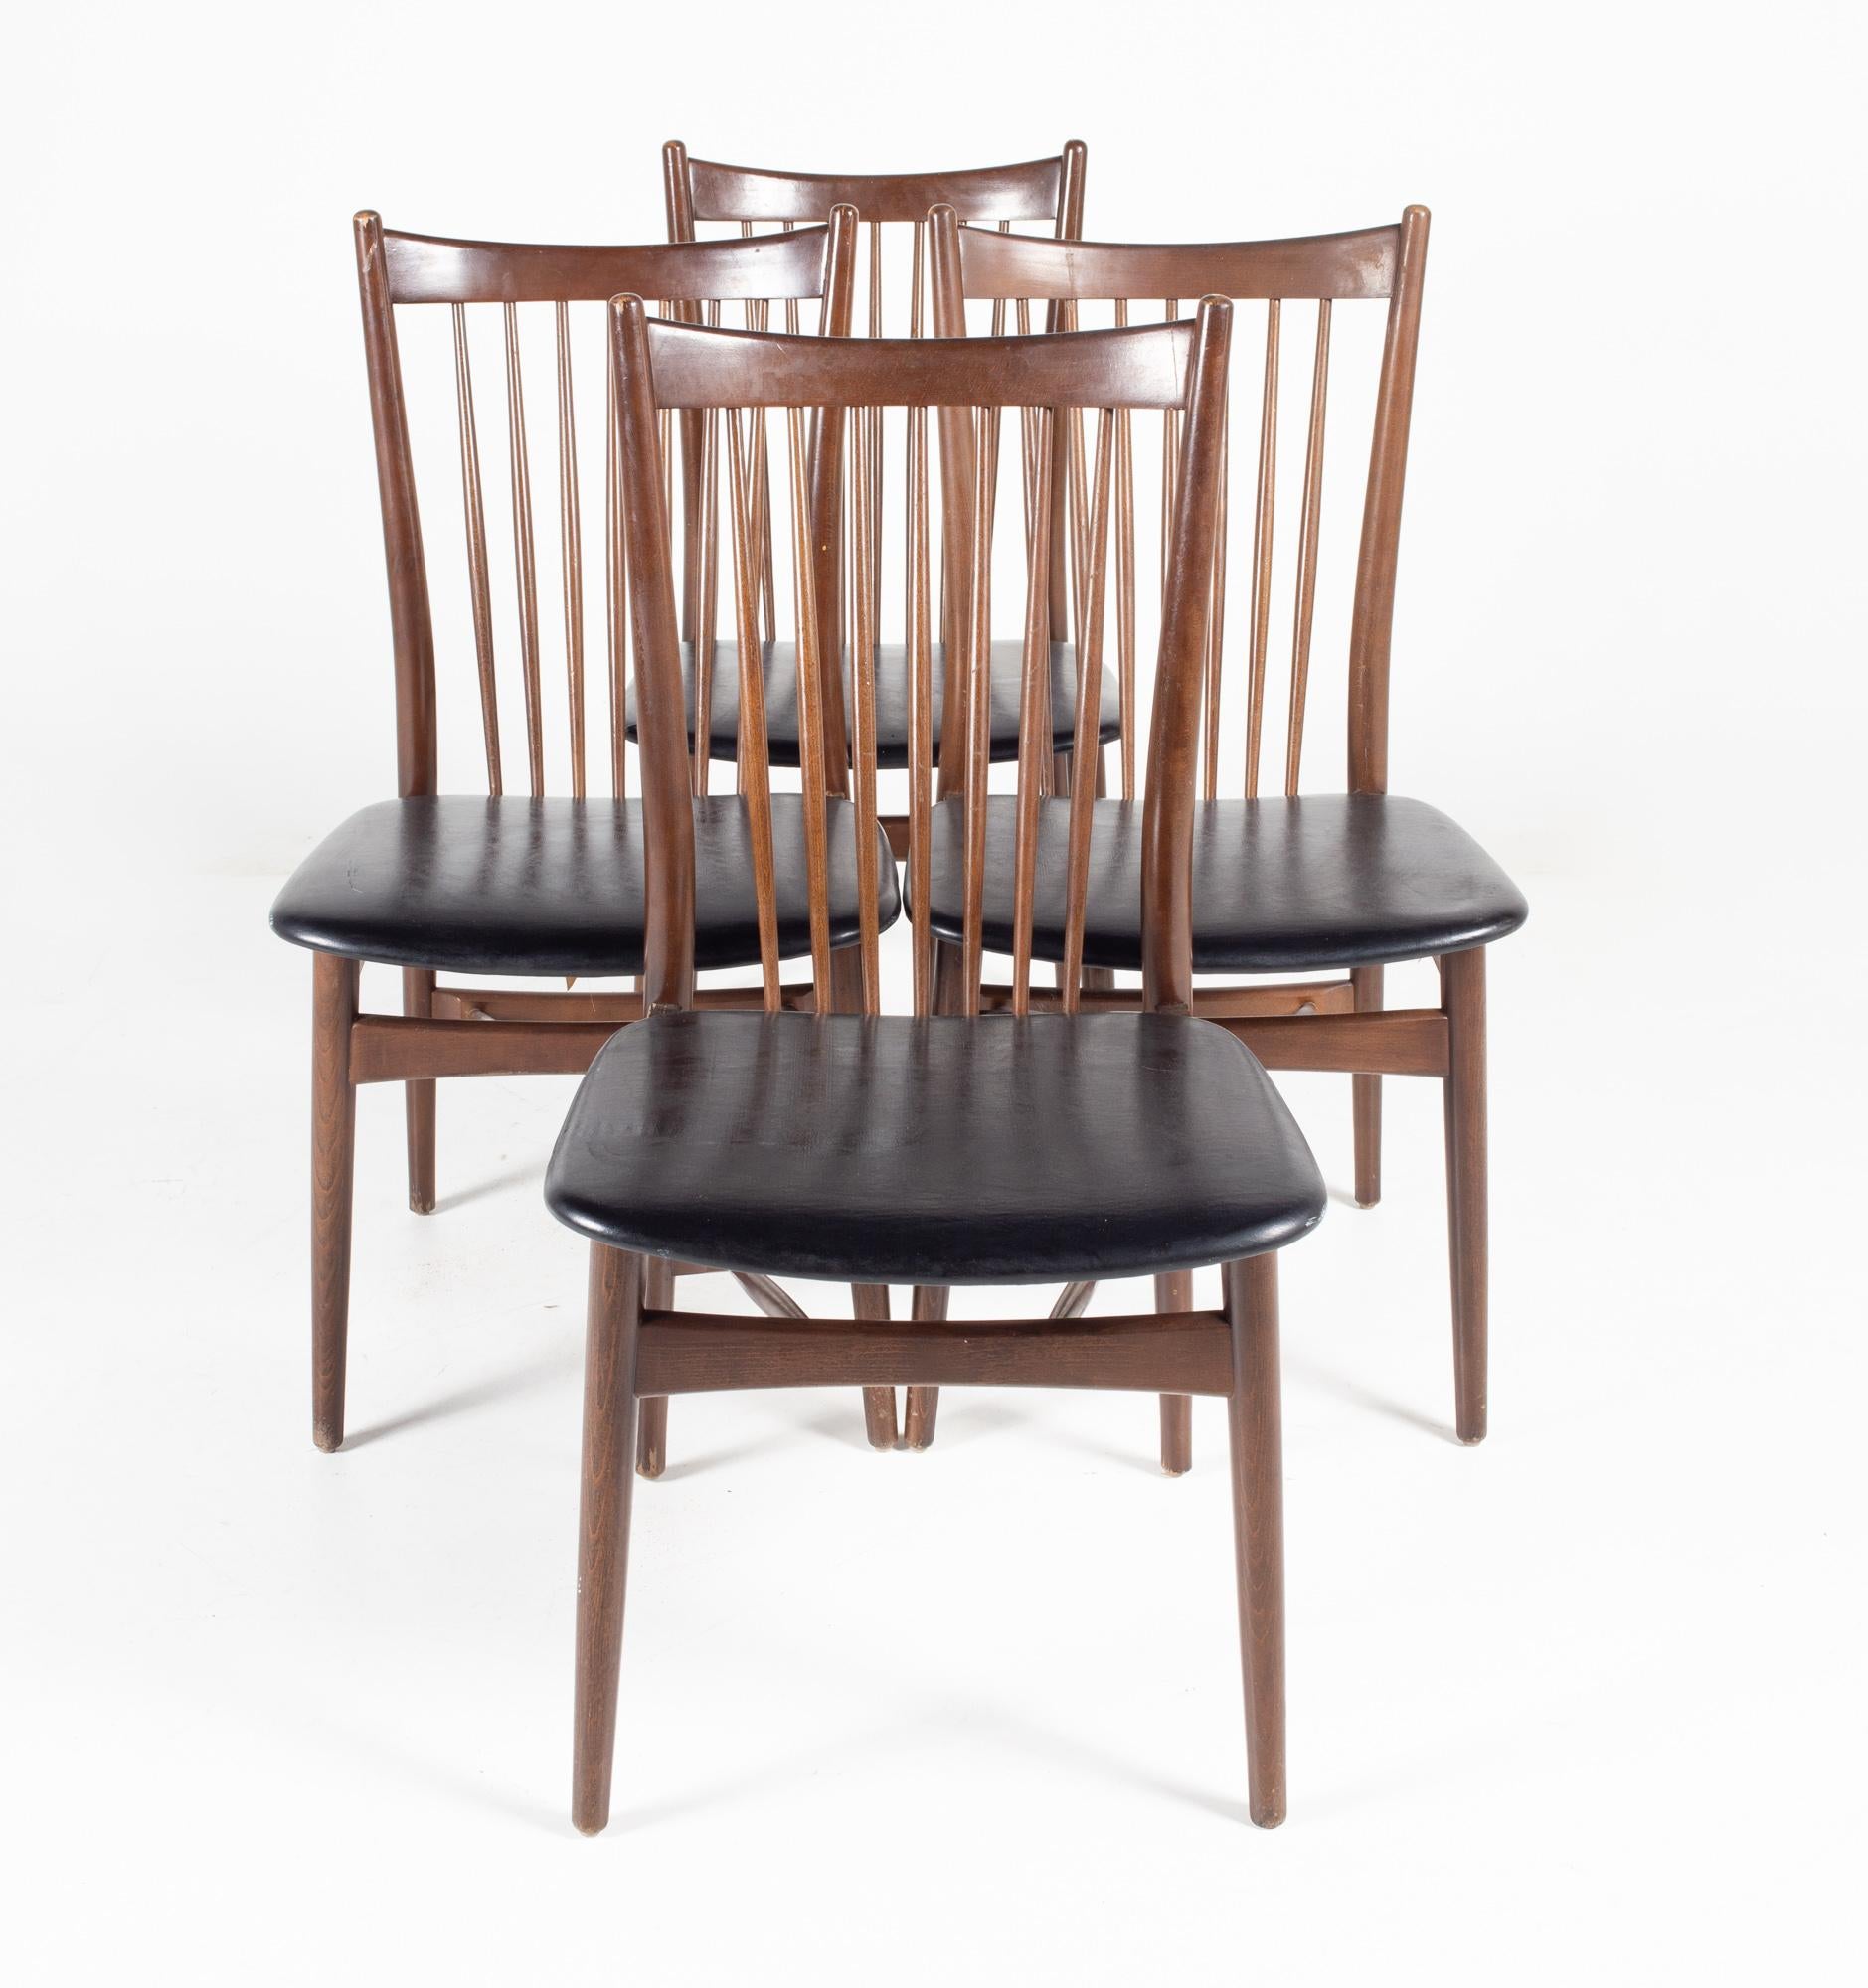 Viko Baumritter Stil Mitte des Jahrhunderts Nussbaum Esszimmerstühle - Satz von 4

Jeder Stuhl misst: 18 breit x 22 tief x 35 Zoll hoch, mit einer Sitzhöhe von 17,5 Zoll 

Alle Möbelstücke sind in einem so genannten restaurierten Vintage-Zustand